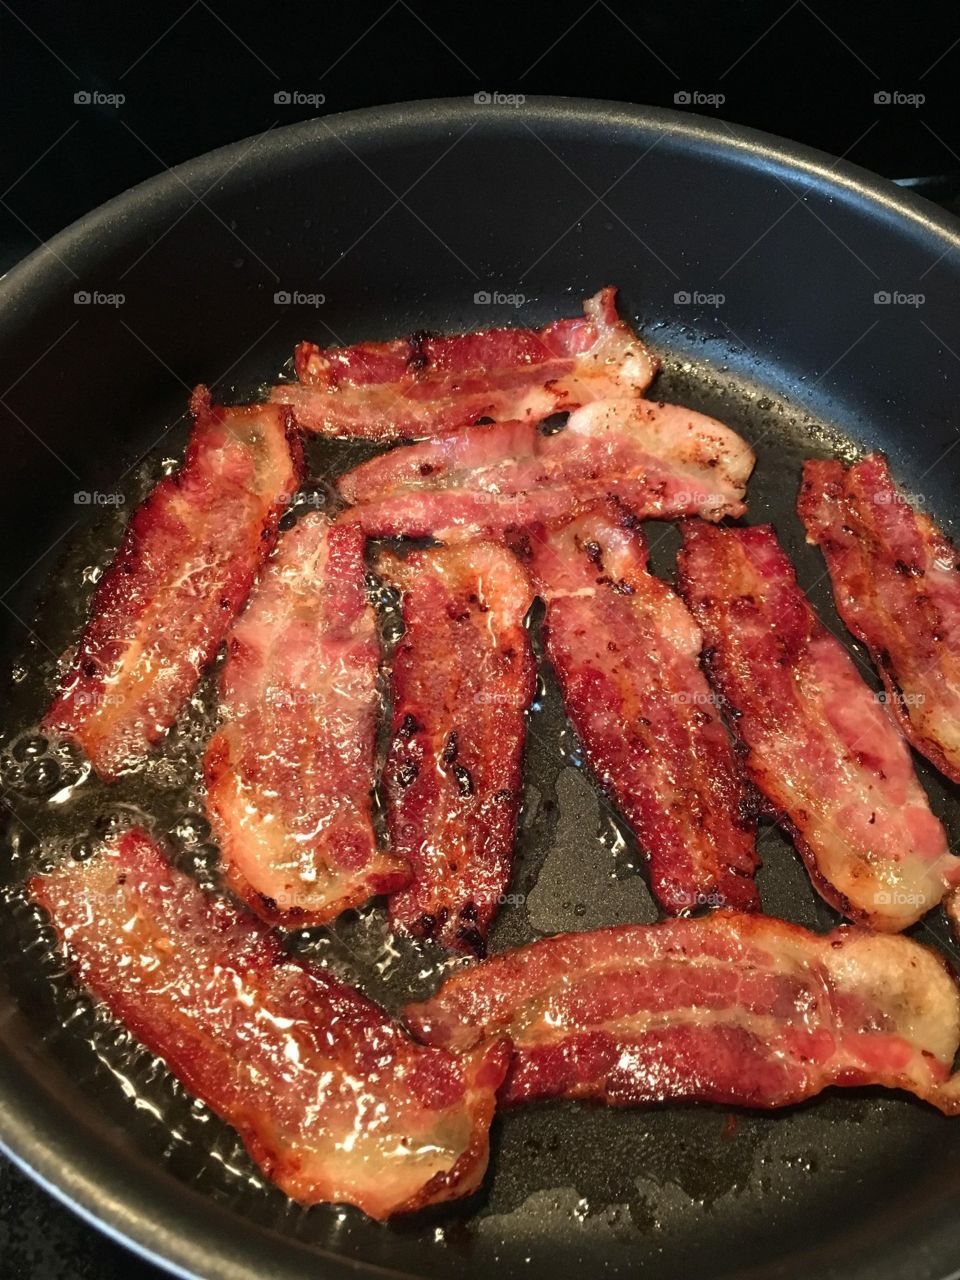 Bacon 